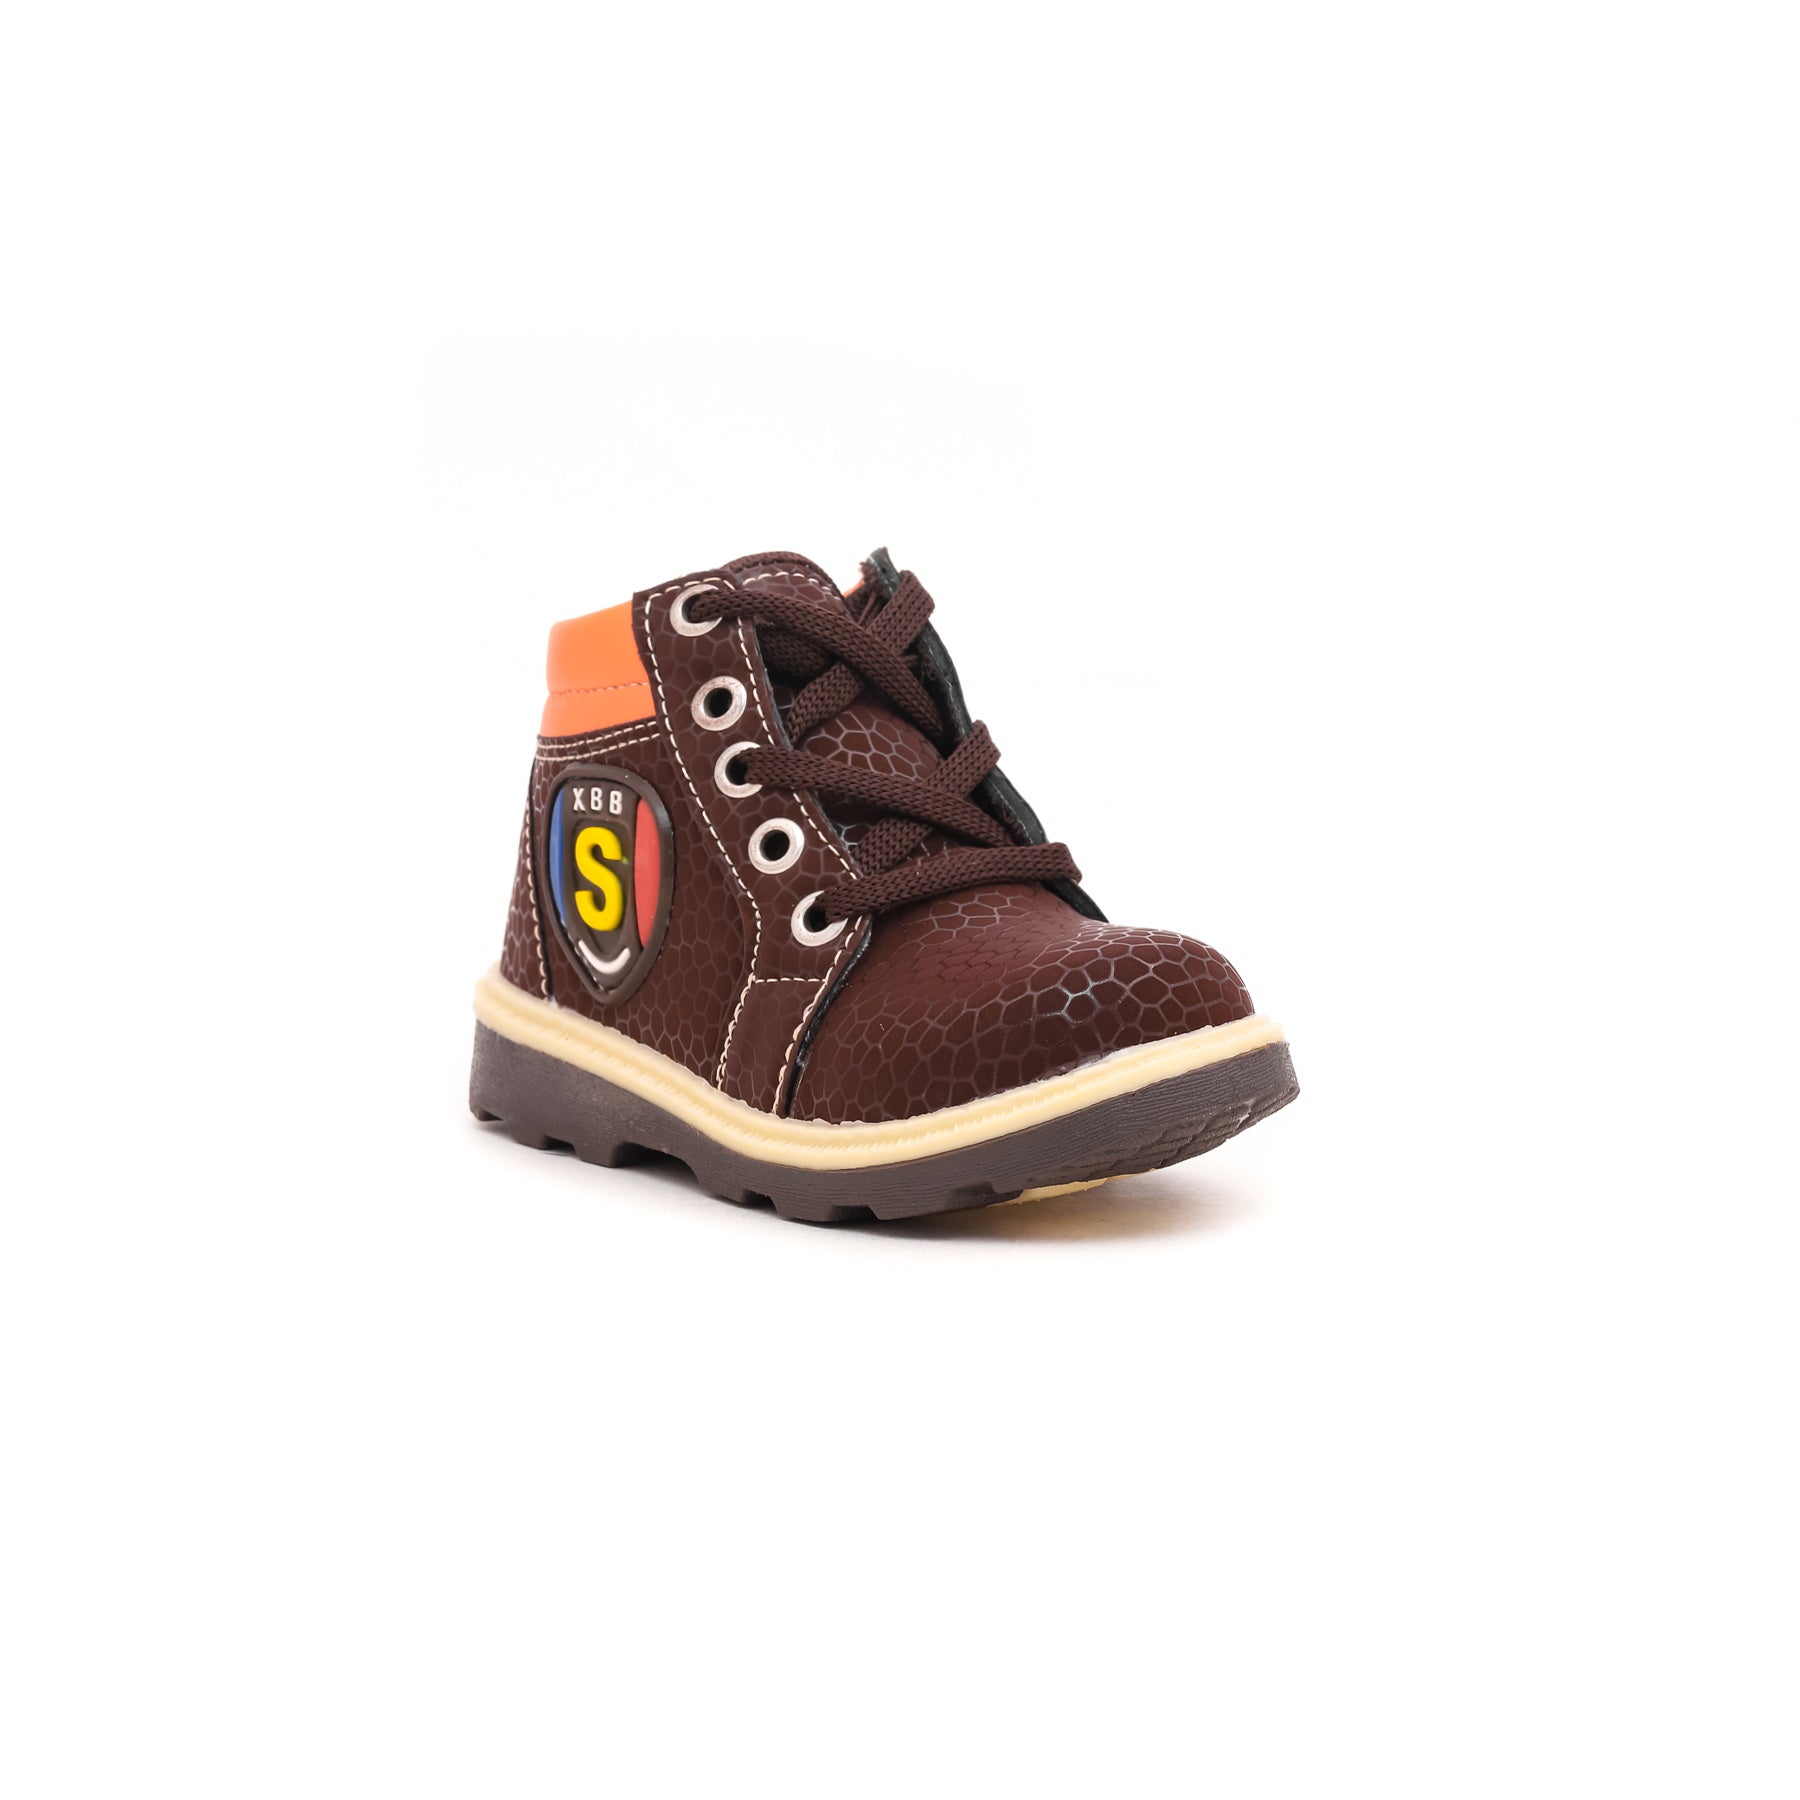 Boys Brown Long Shoes KD8052